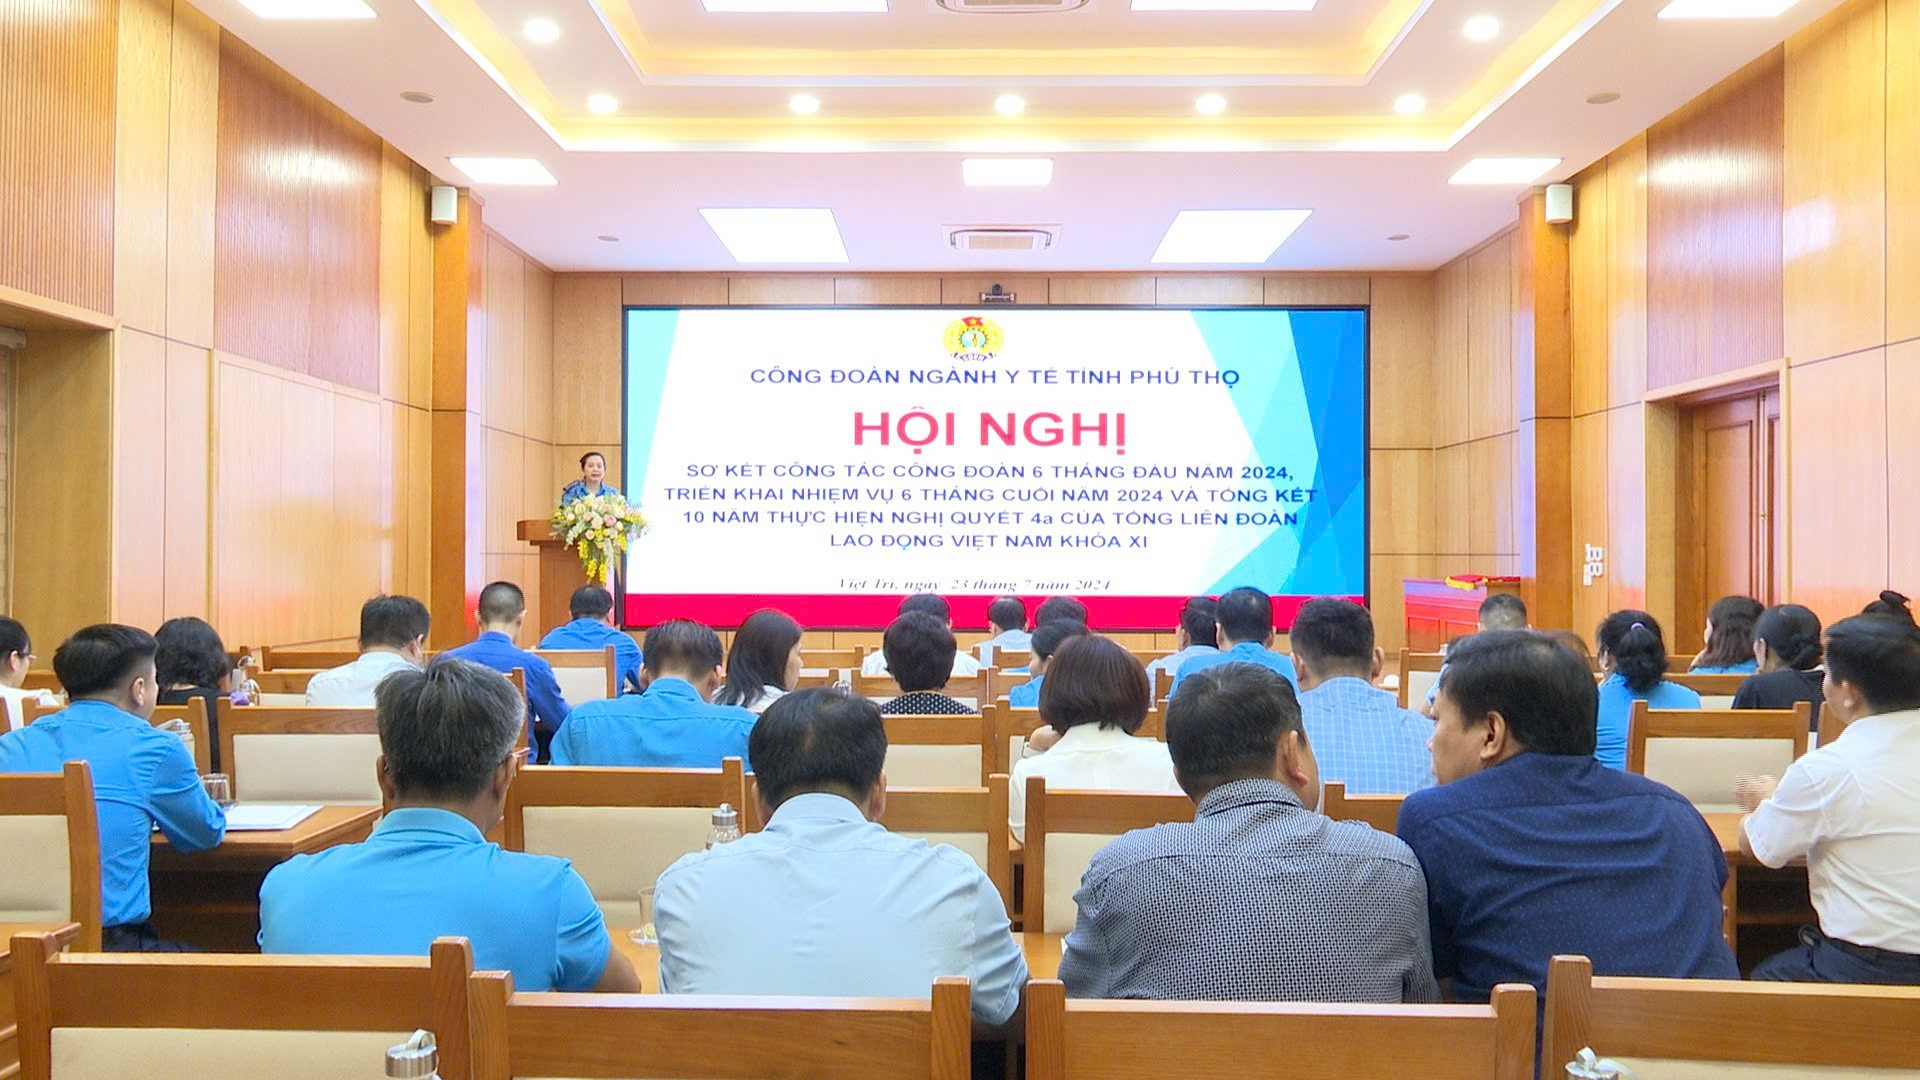 Hội nghị sơ kết công tác Công đoàn 6 tháng đầu năm 2024, triển khai nhiệm vụ 6 tháng cuối năm 2024 và Tổng kết 10 năm thực hiện Nghị quyết 04a của Tổng Liên đoàn Lao động Việt Nam khóa XI